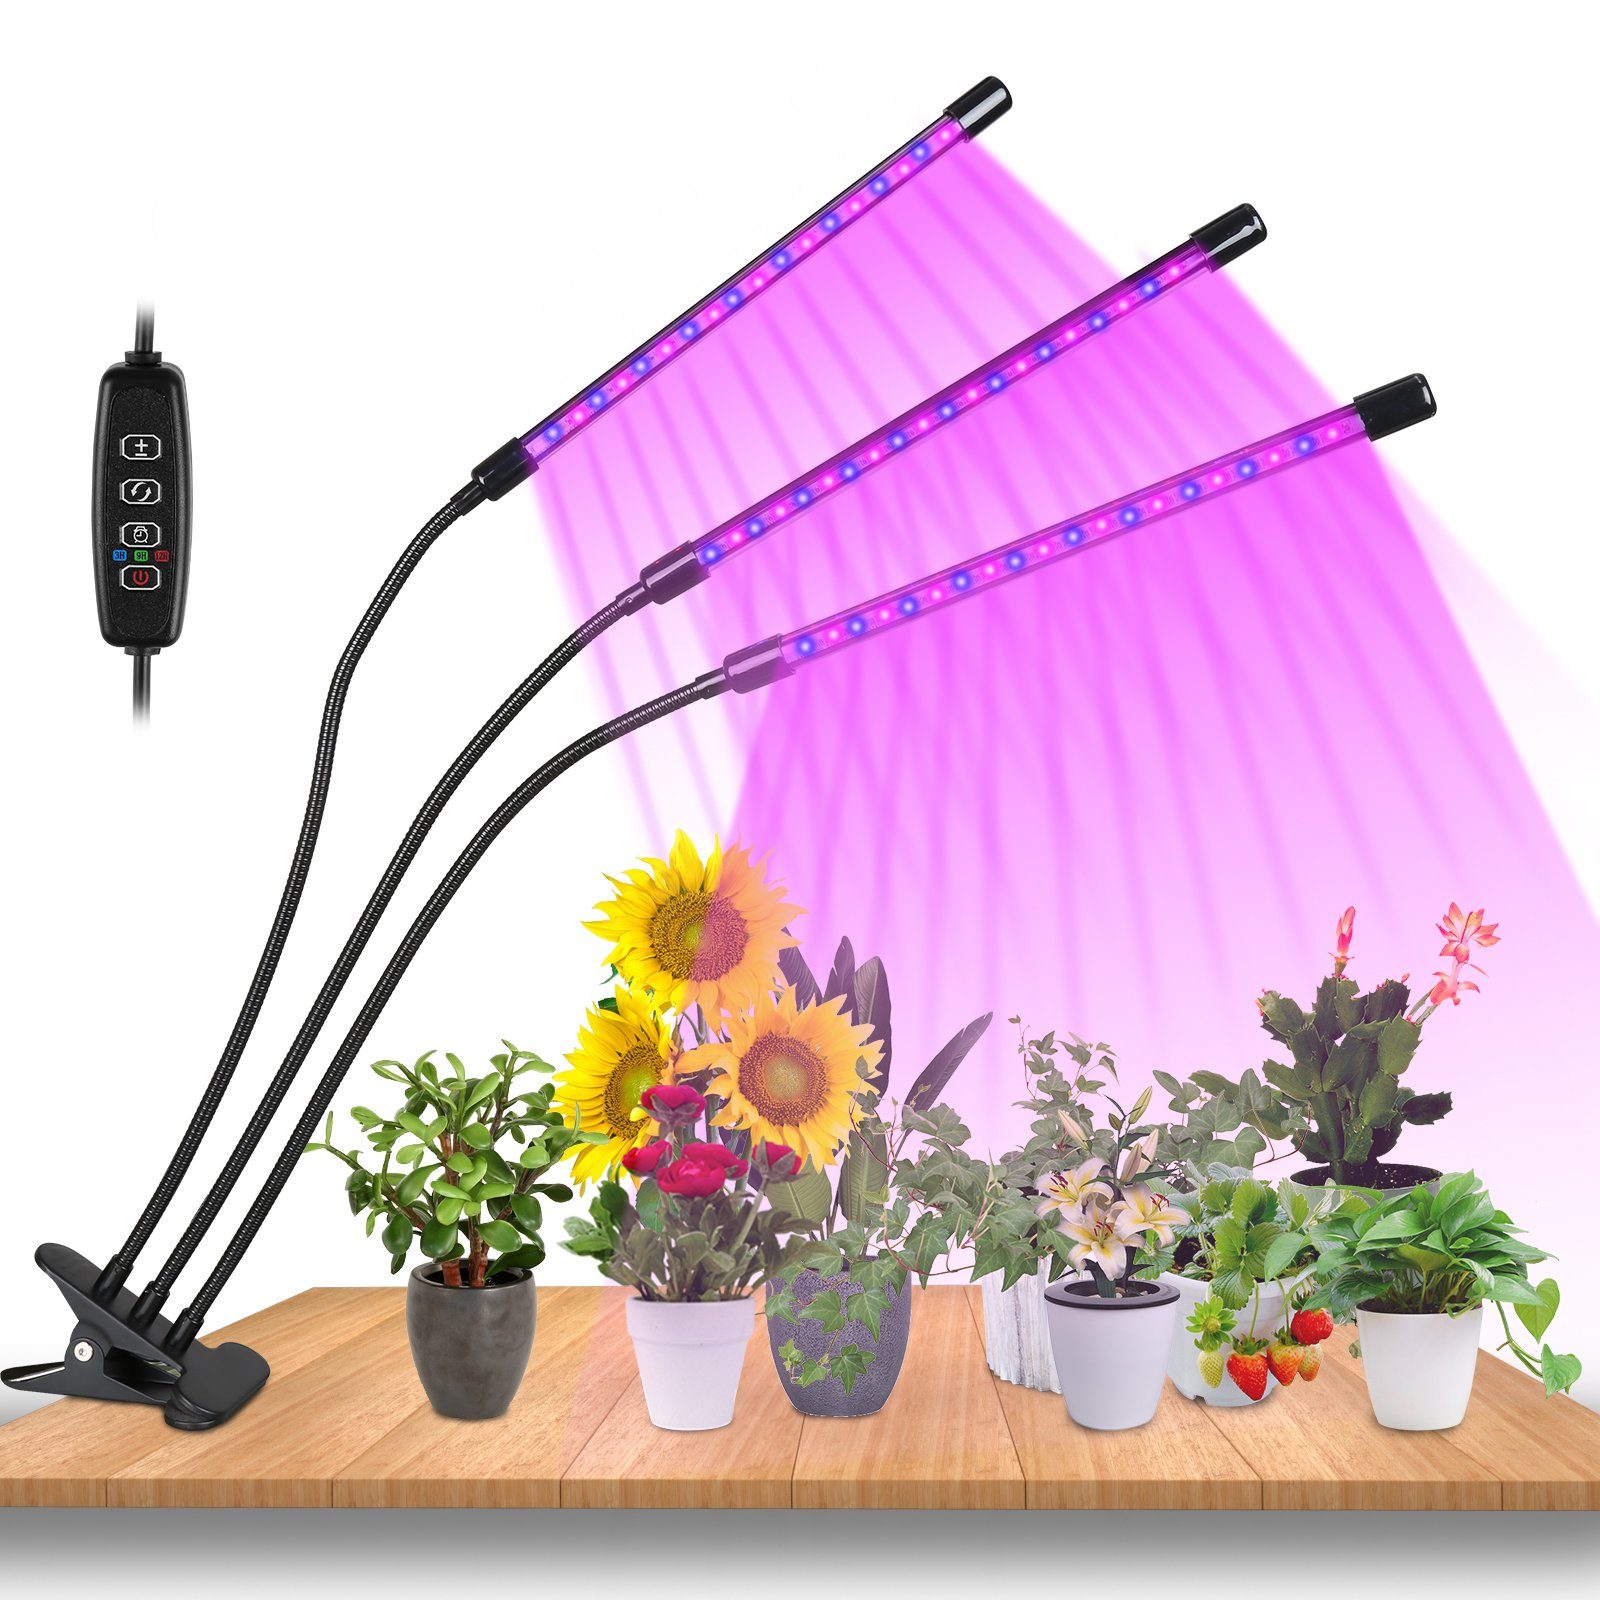 Gimisgu Grow 3 Wachstumslampe, 10 mit Modus, Pflanzenlampe Dimmbar Köpfe Vollspektrum Pflanzenlicht 3 LED Light 30W Licht Helligkeitsstufen